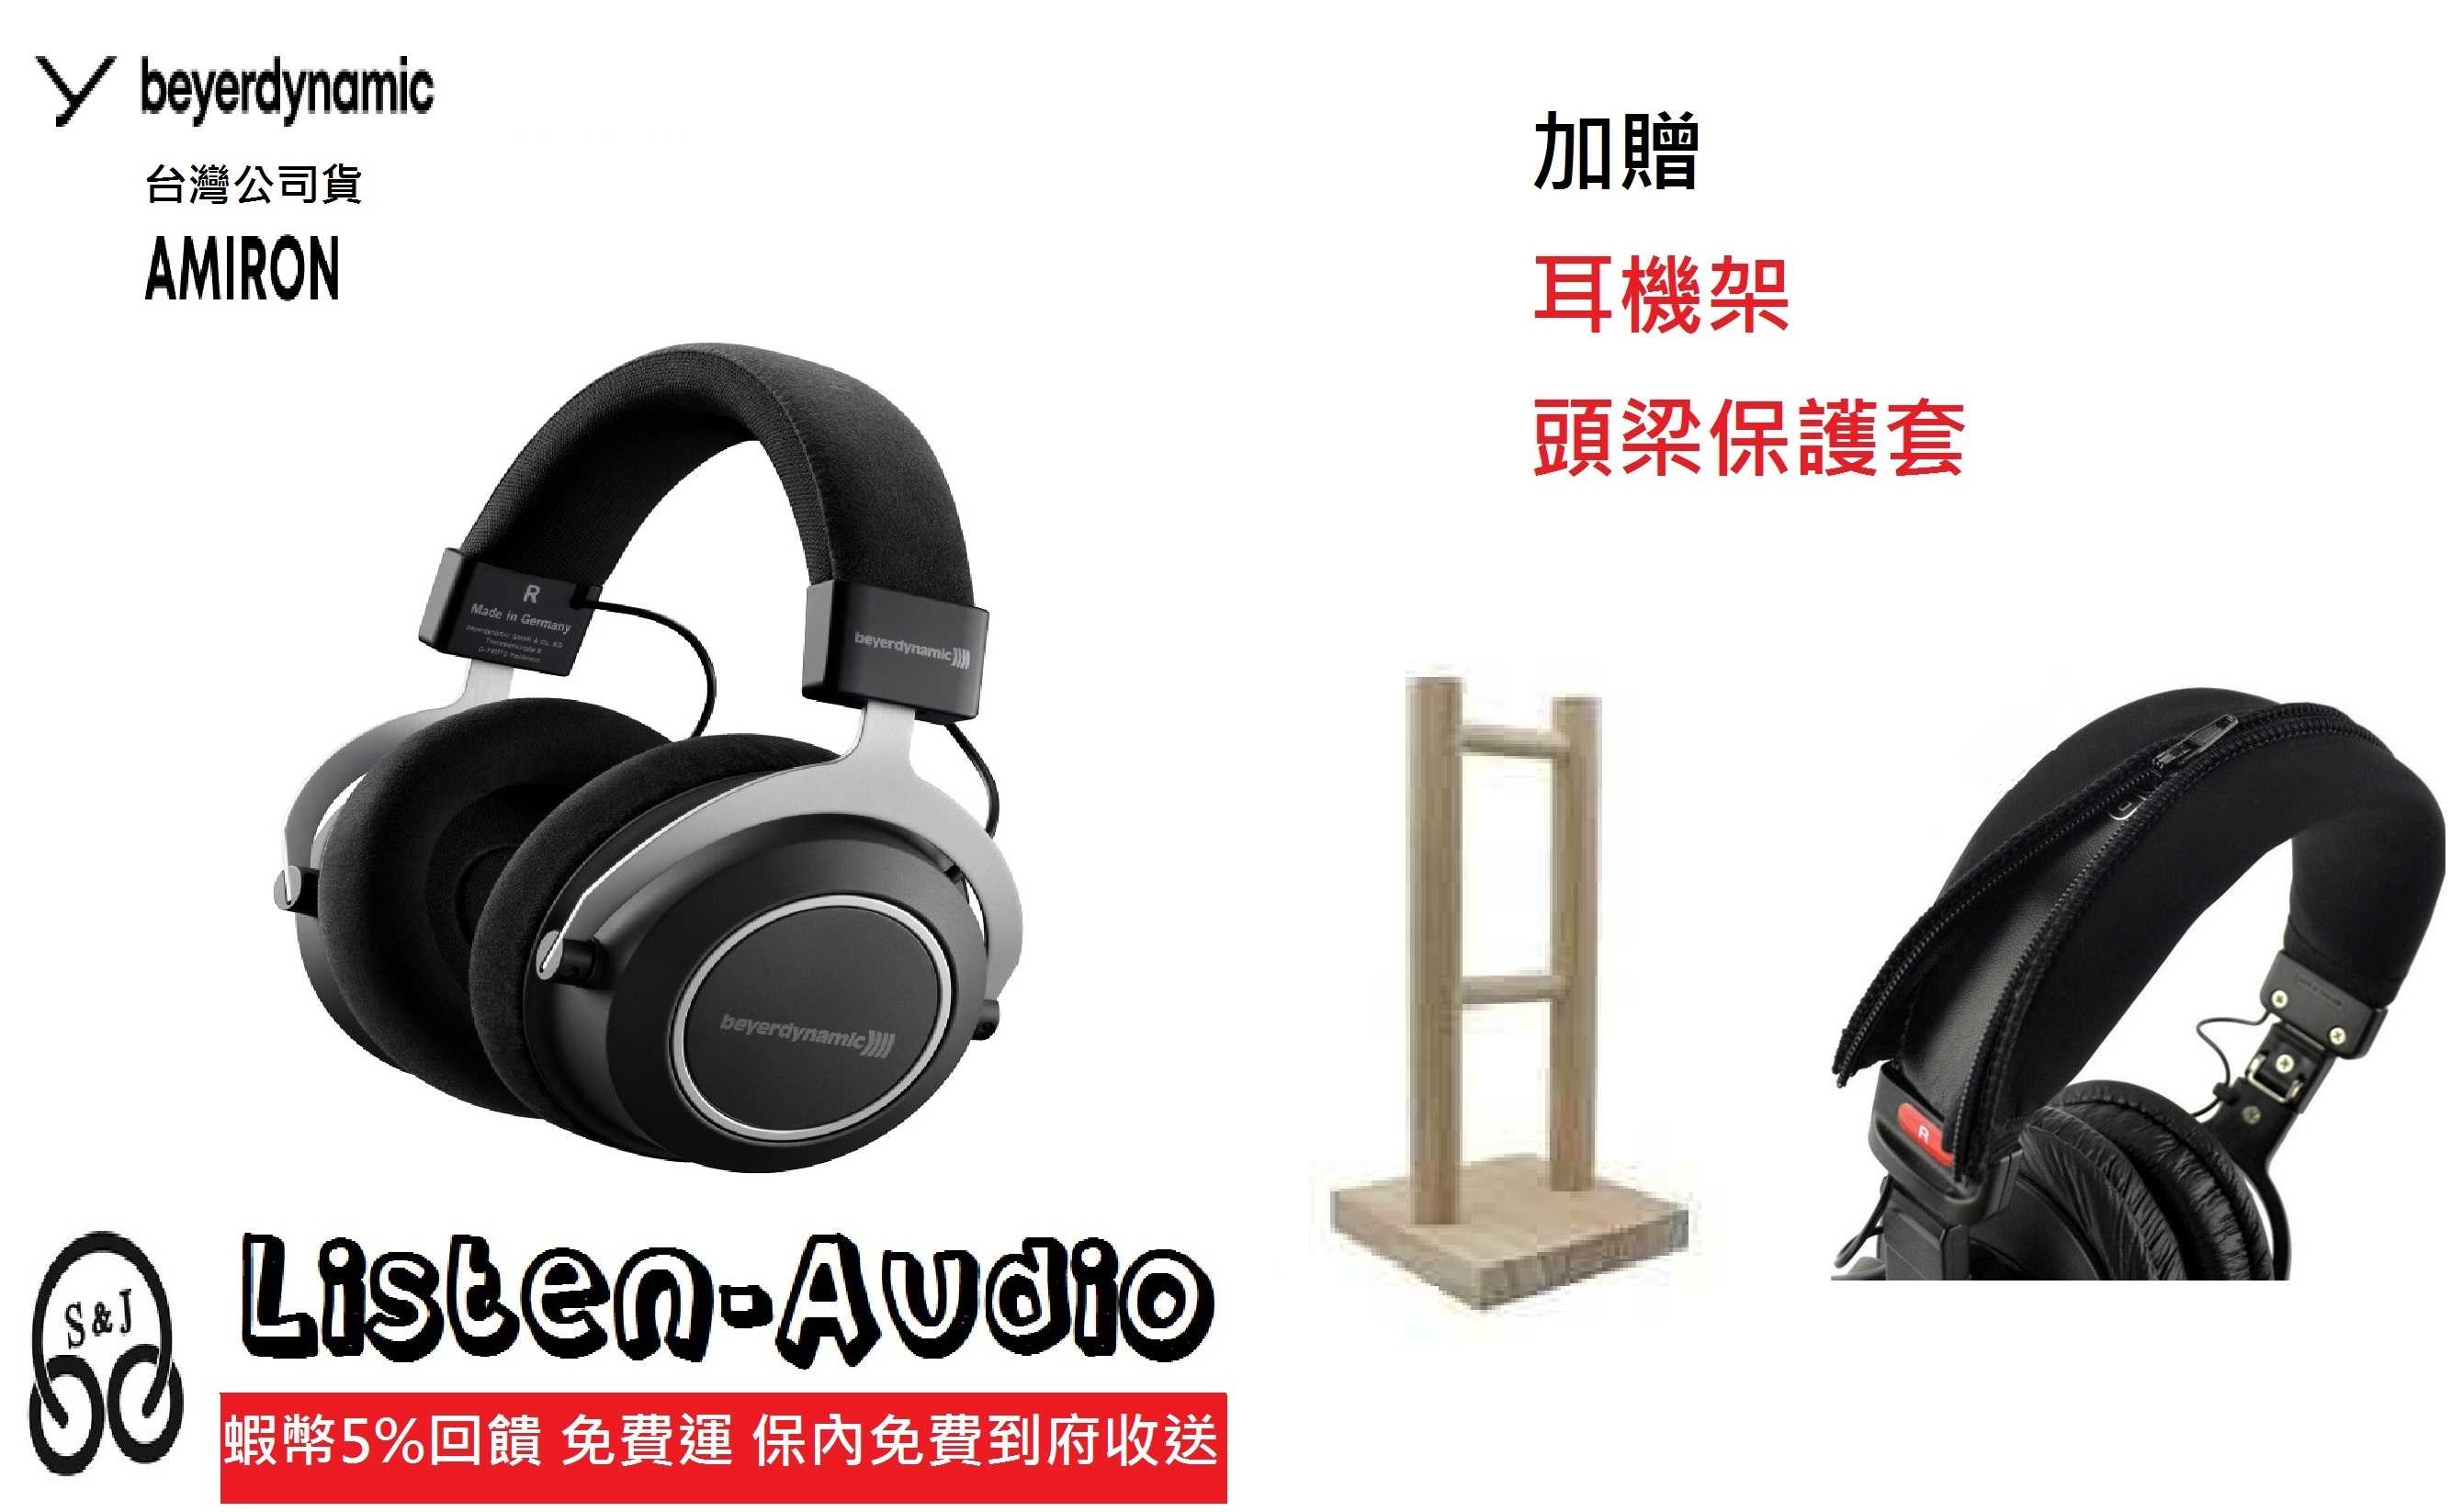 新竹立聲 | Beyerdynamic Amiron home 監聽耳機 加送耳機架 保護套 台灣公司貨 二年保固